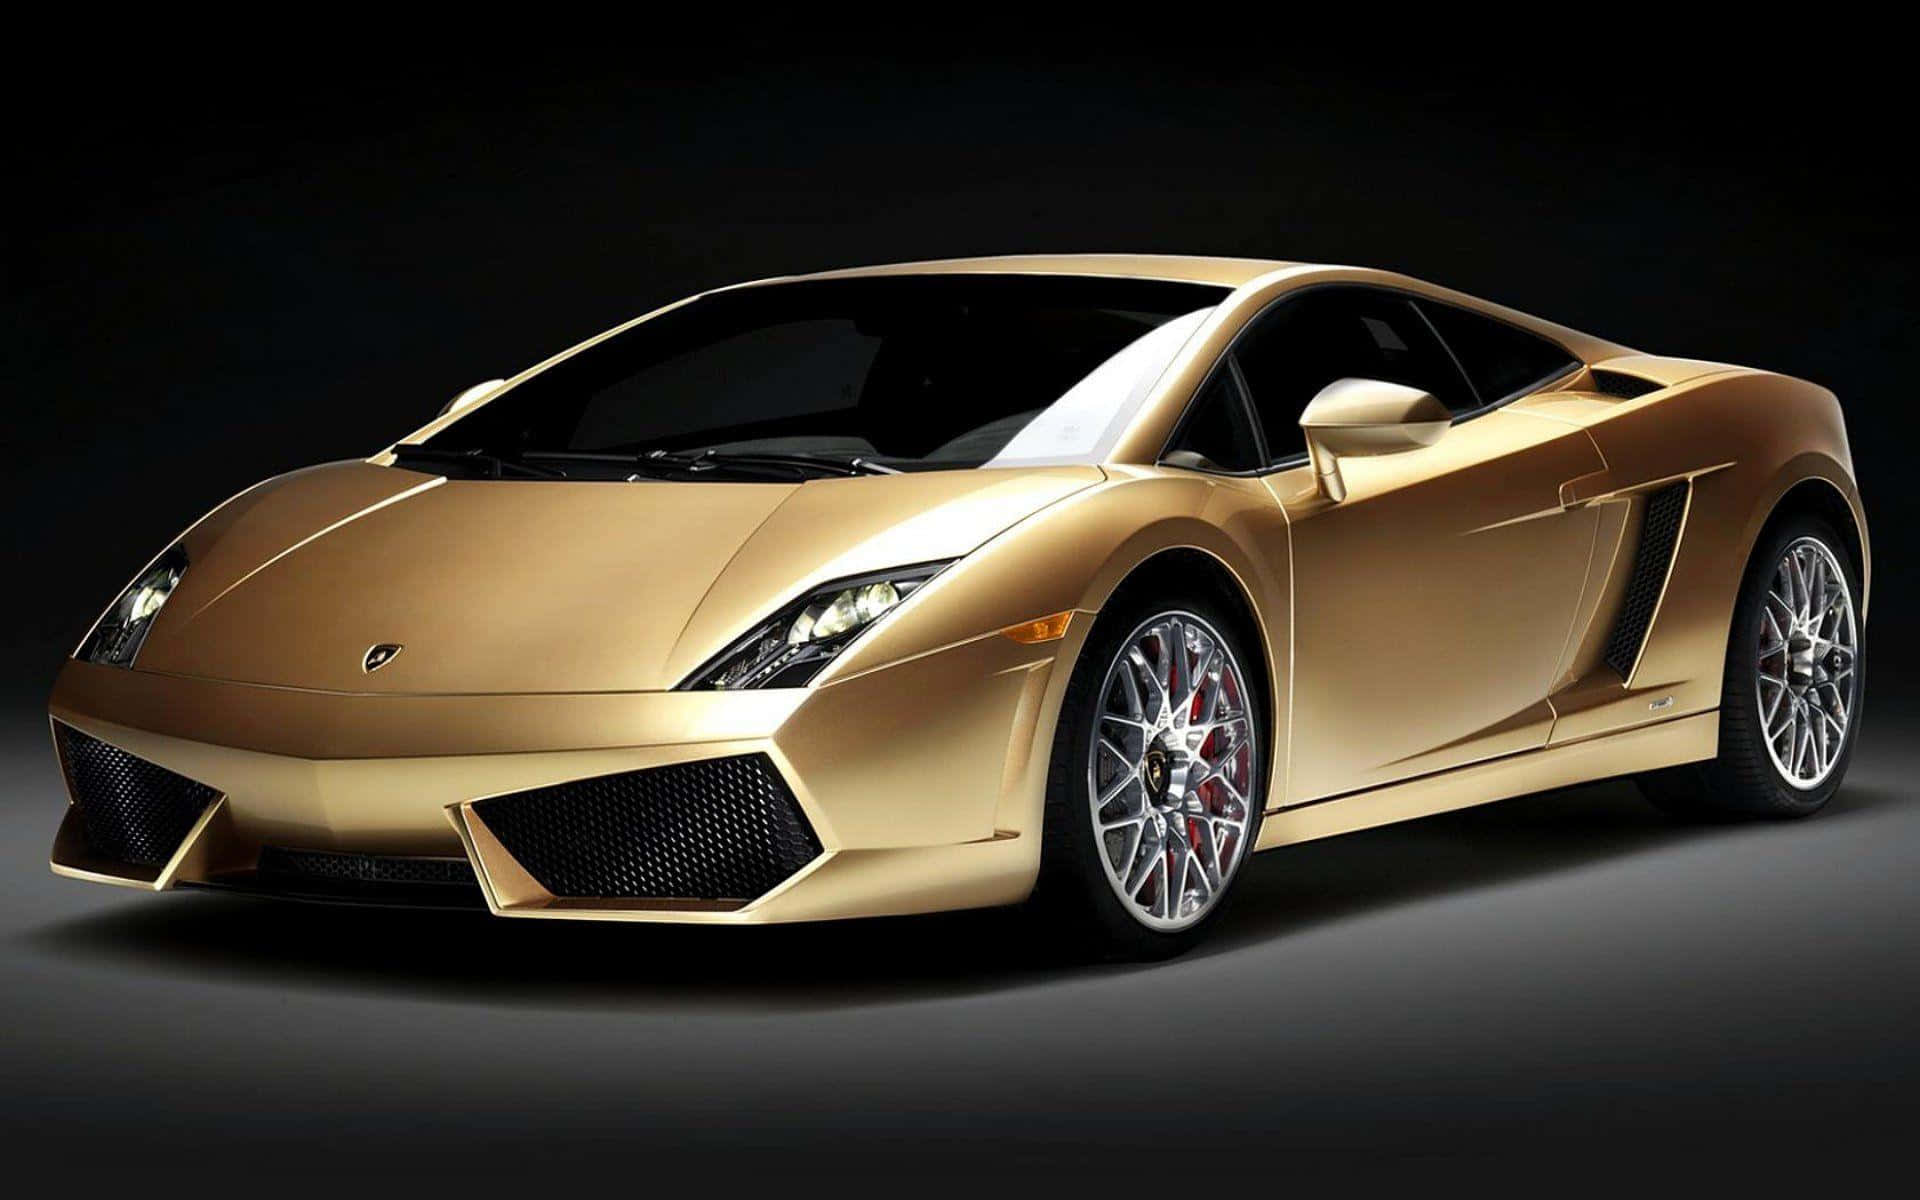 Machensie Eine Aussage Mit Dem Faszinierenden Goldenen Lamborghini. Wallpaper